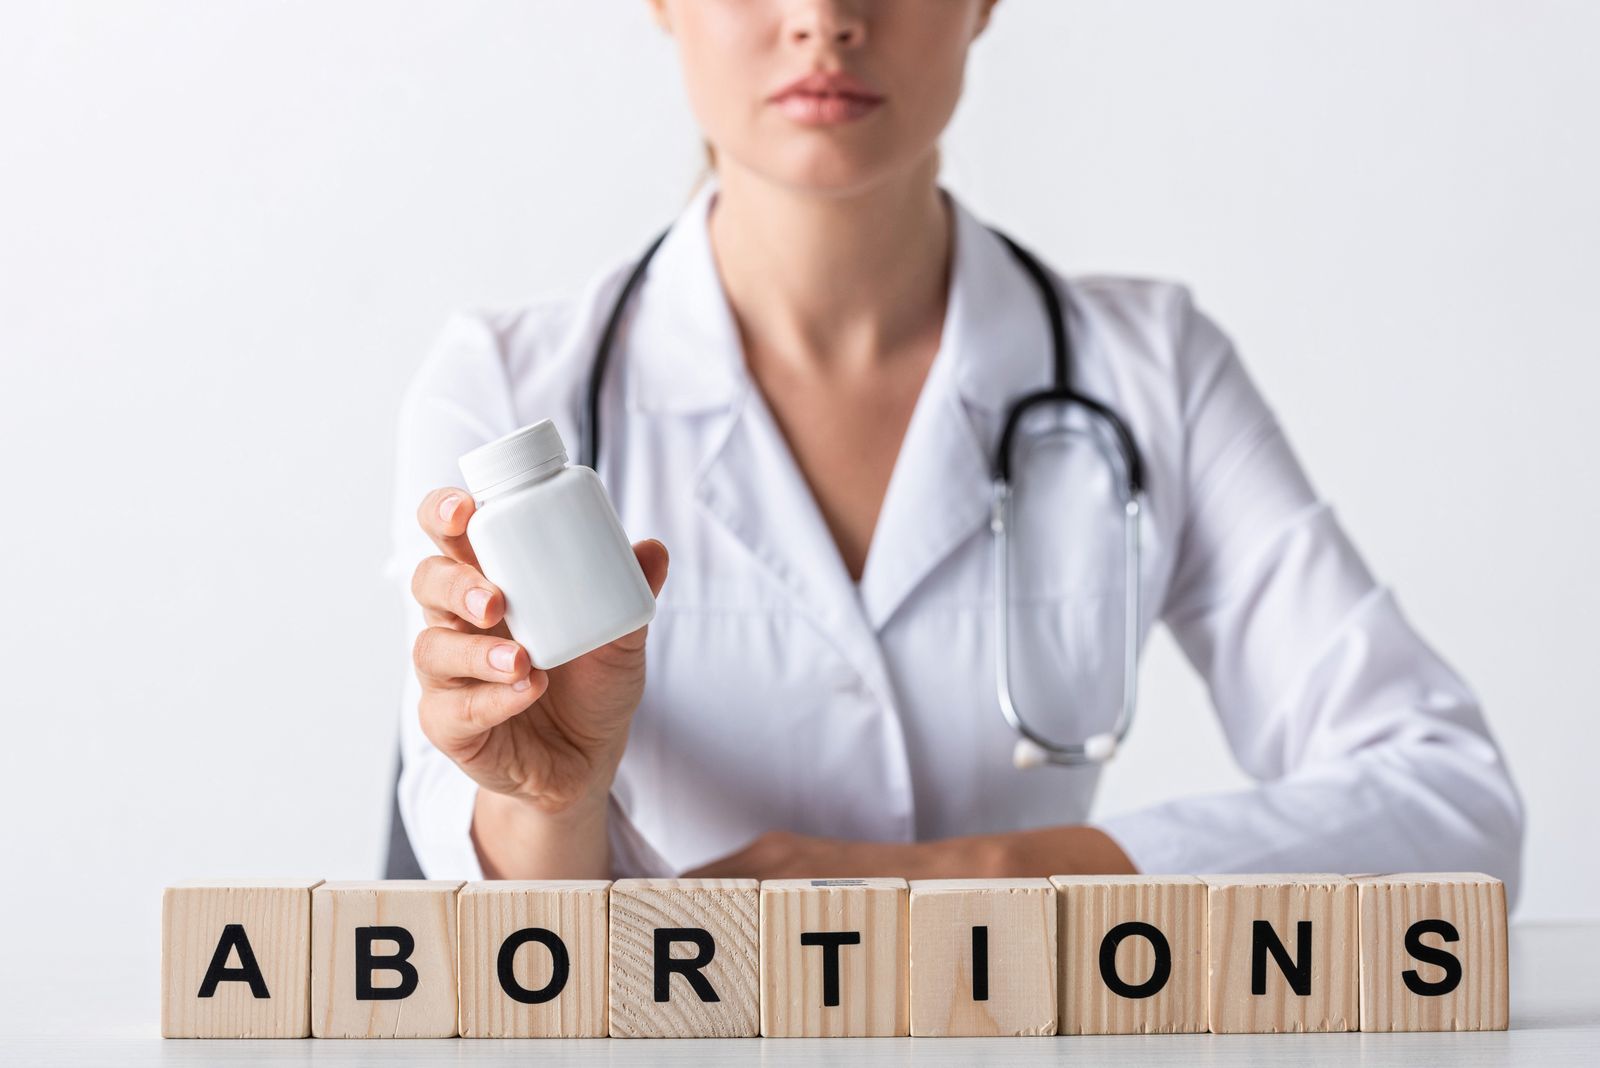 Abortion - Wikipedia